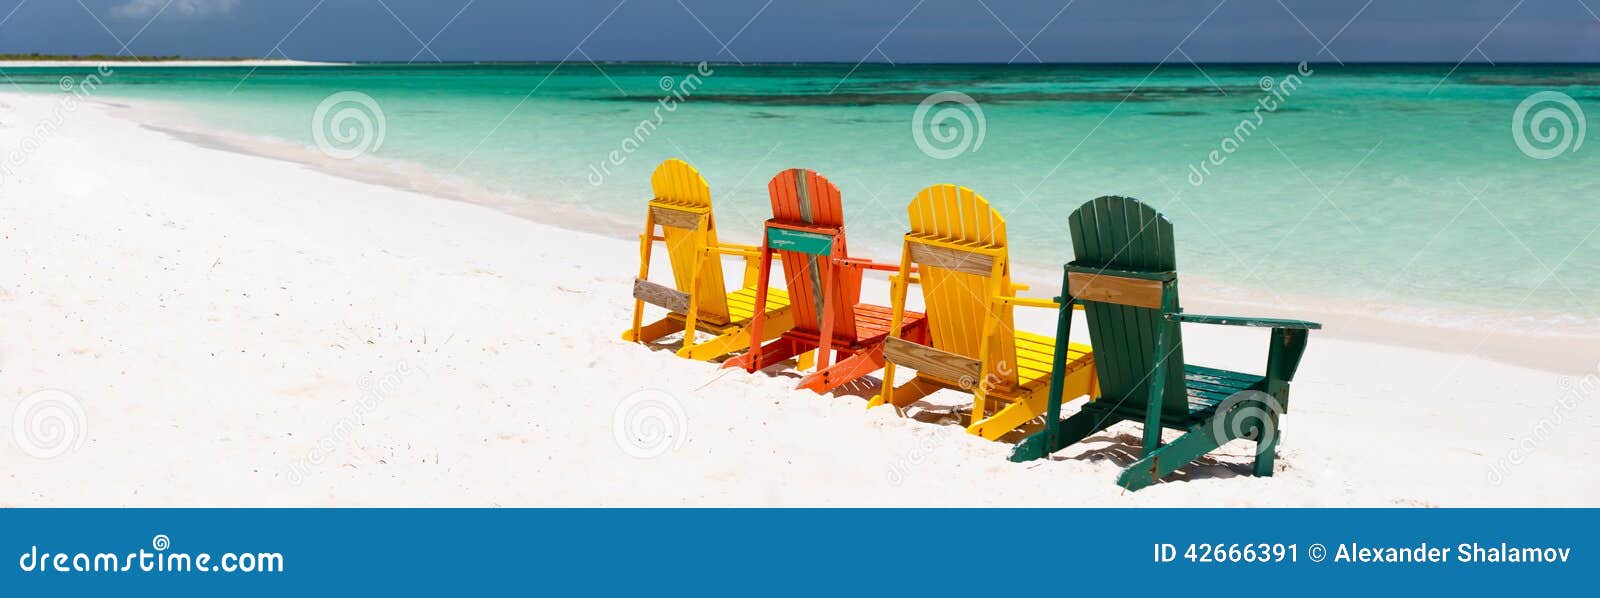 Cadeiras coloridas na praia das caraíbas. Fileira de cadeiras de madeira coloridas na praia branca tropical da areia nas Caraíbas, panorama com o espaço da cópia perfeito para bandeiras